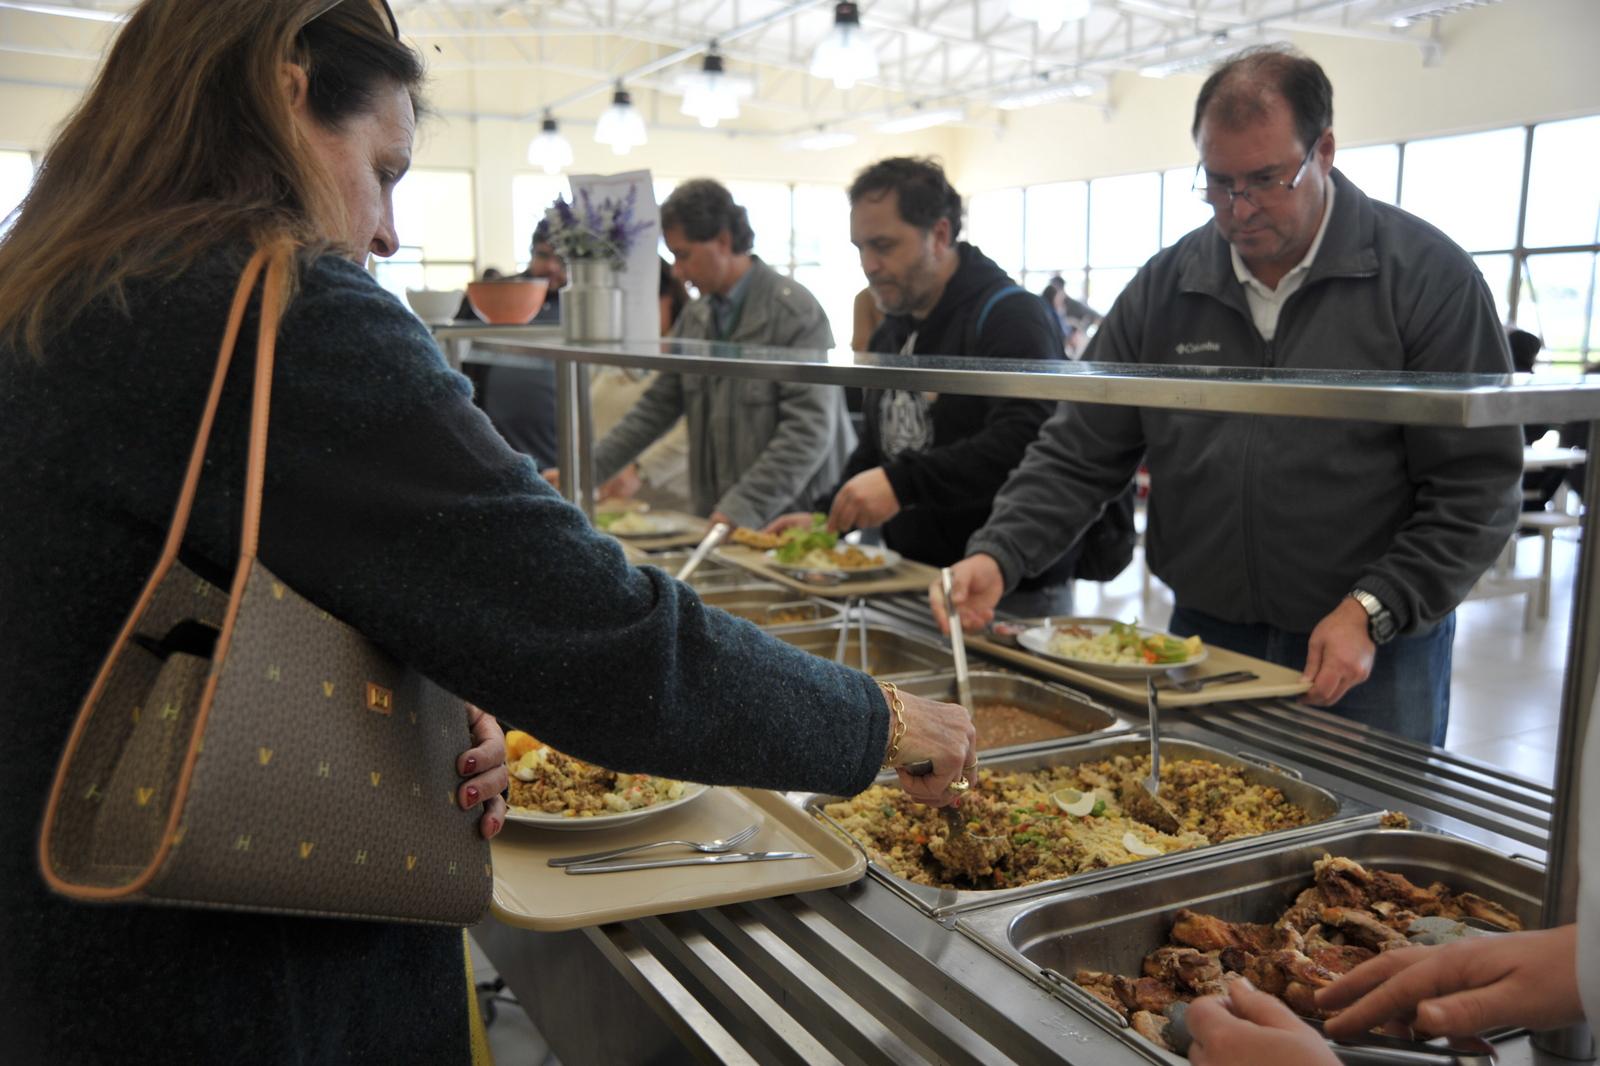 A foto mostra as pessoas servindo seus pratos na linha de servir do restaurante universitário. Uma mulher, com a bolsa a tiracolo, aparece em primeiro plano; no outro lado da linha de servir, mais pessoas servem suas refeições